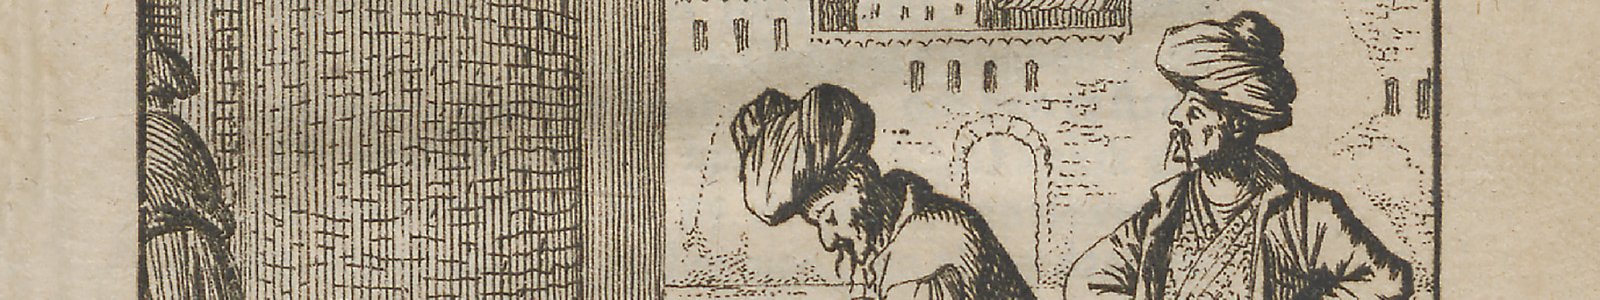 Uitsnede van de plaat op pagina 266B van de koranvertaling van Glazemaker uit de Bijzondere Collecties van de Universiteitsbibliotheek Utrecht